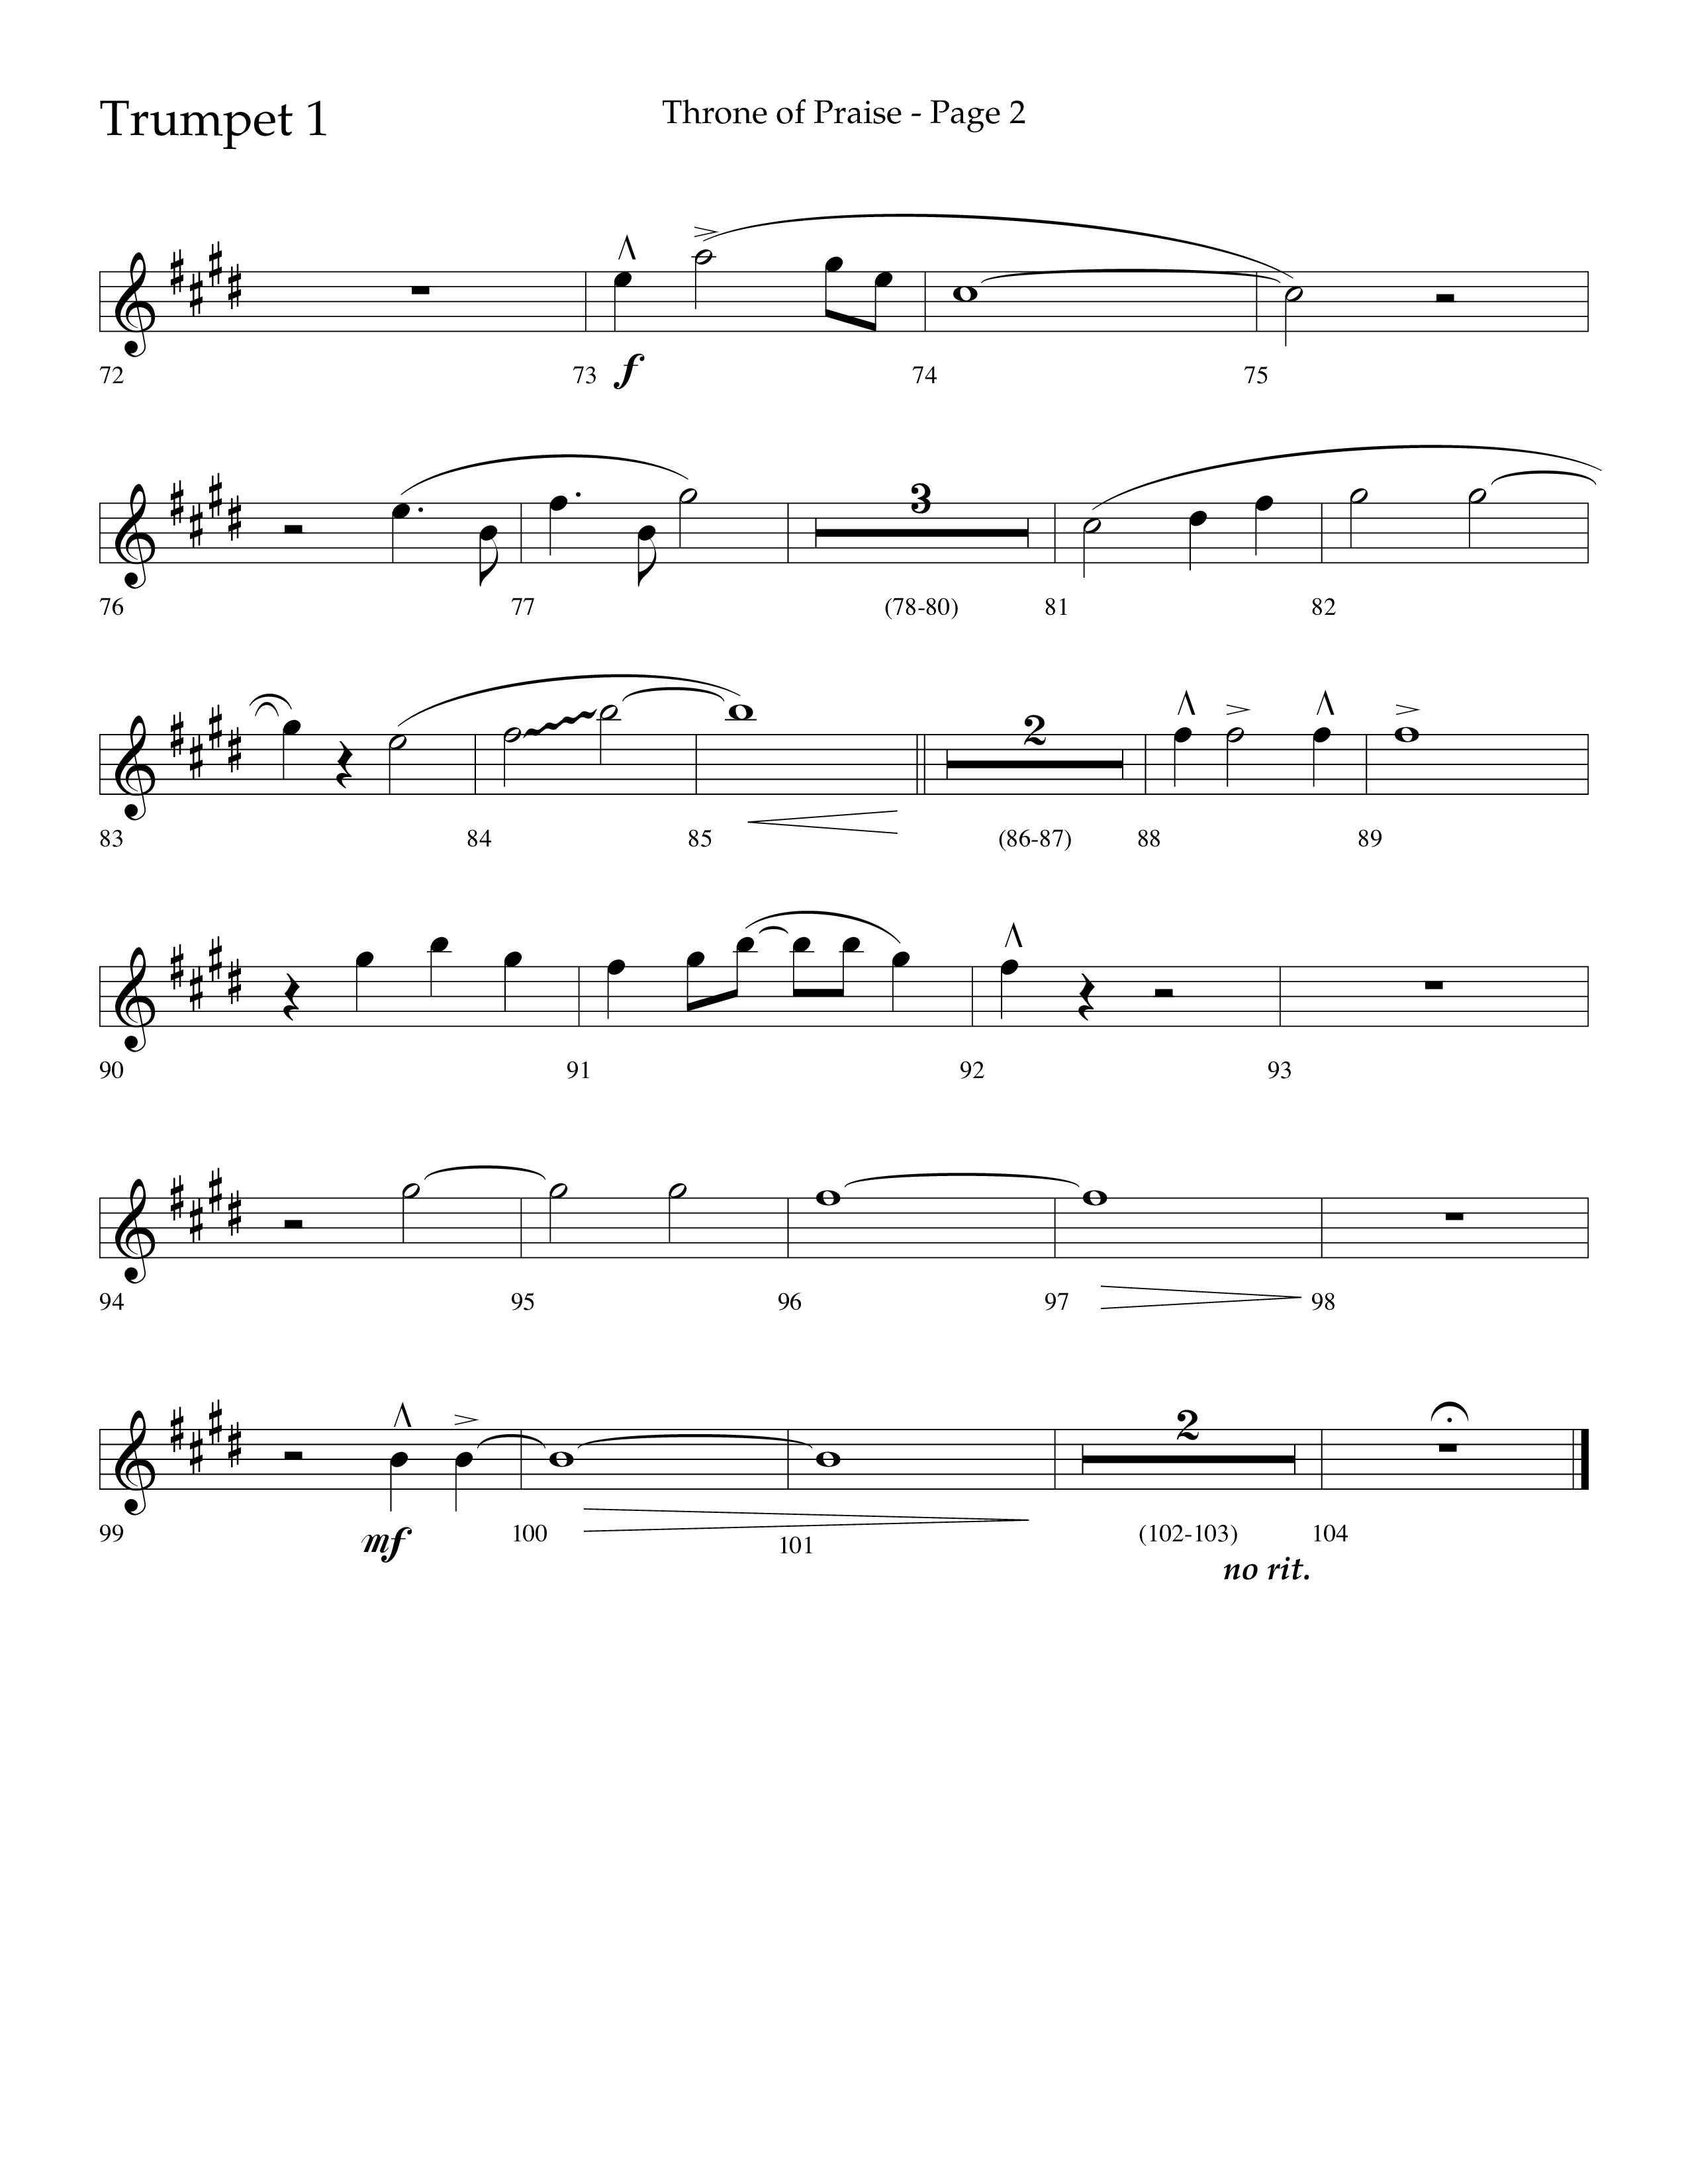 Throne Of Praise (Choral Anthem SATB) Trumpet 1 (Lifeway Choral / Arr. J. Daniel Smith)